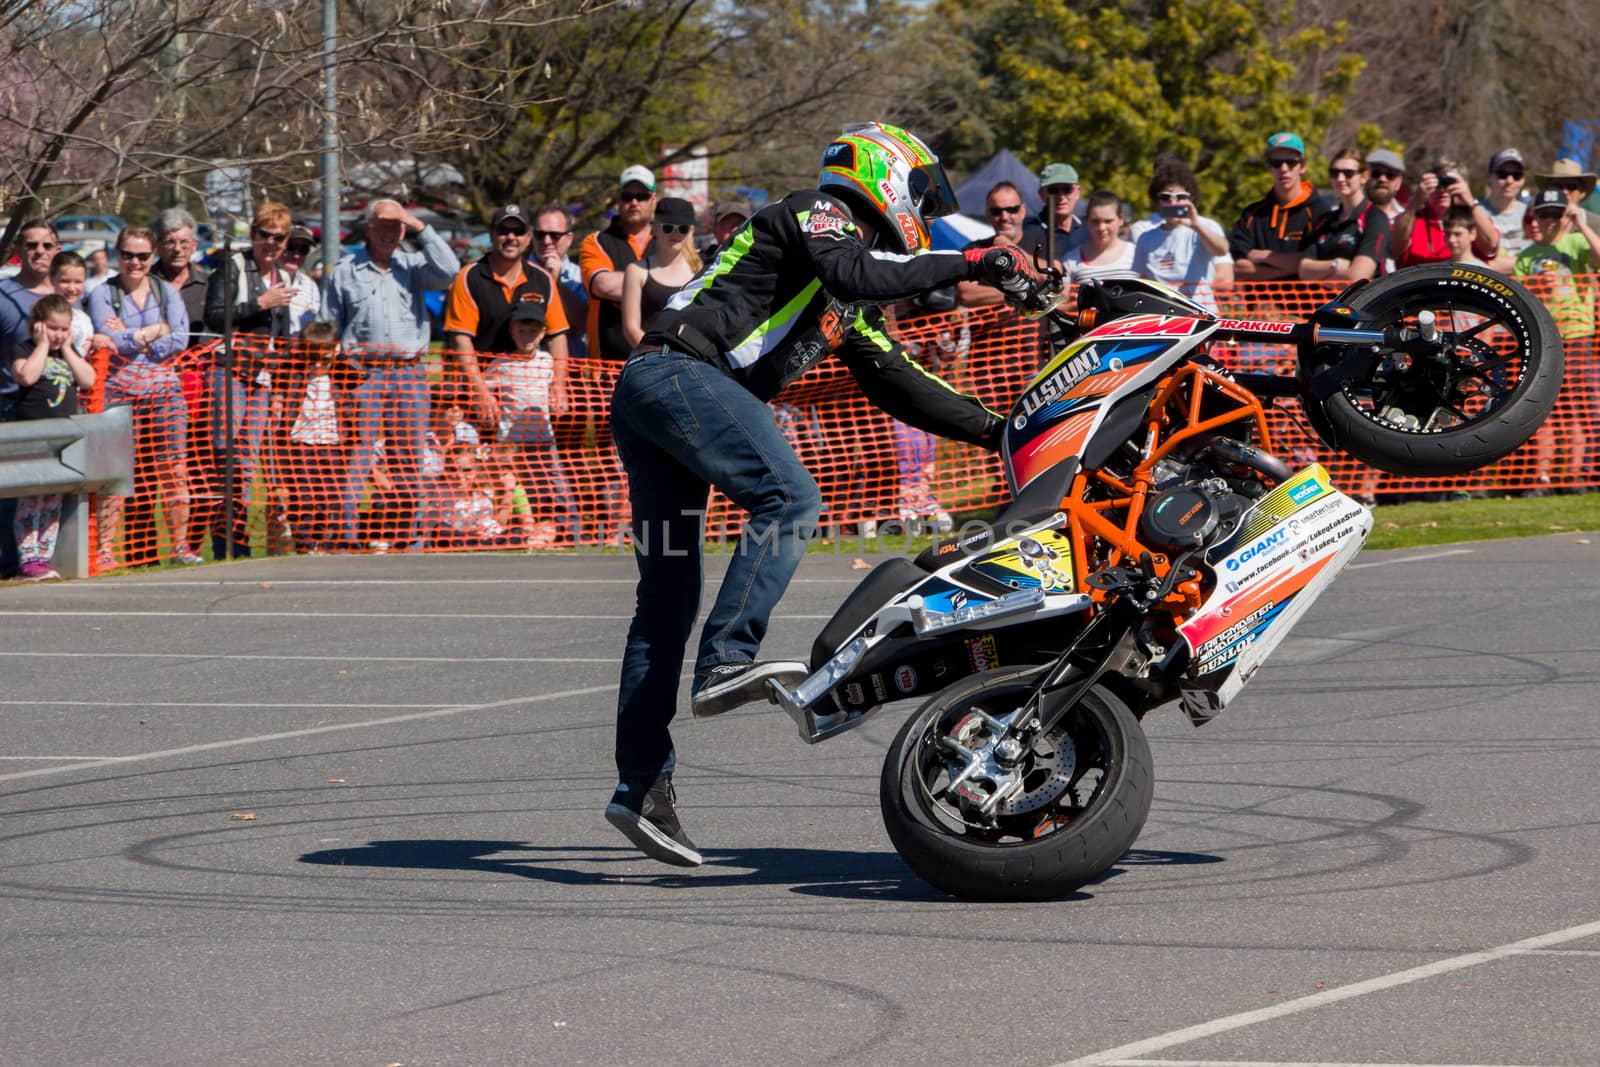 Motorcycle Stunt Rider - Wheelie by davidhewison